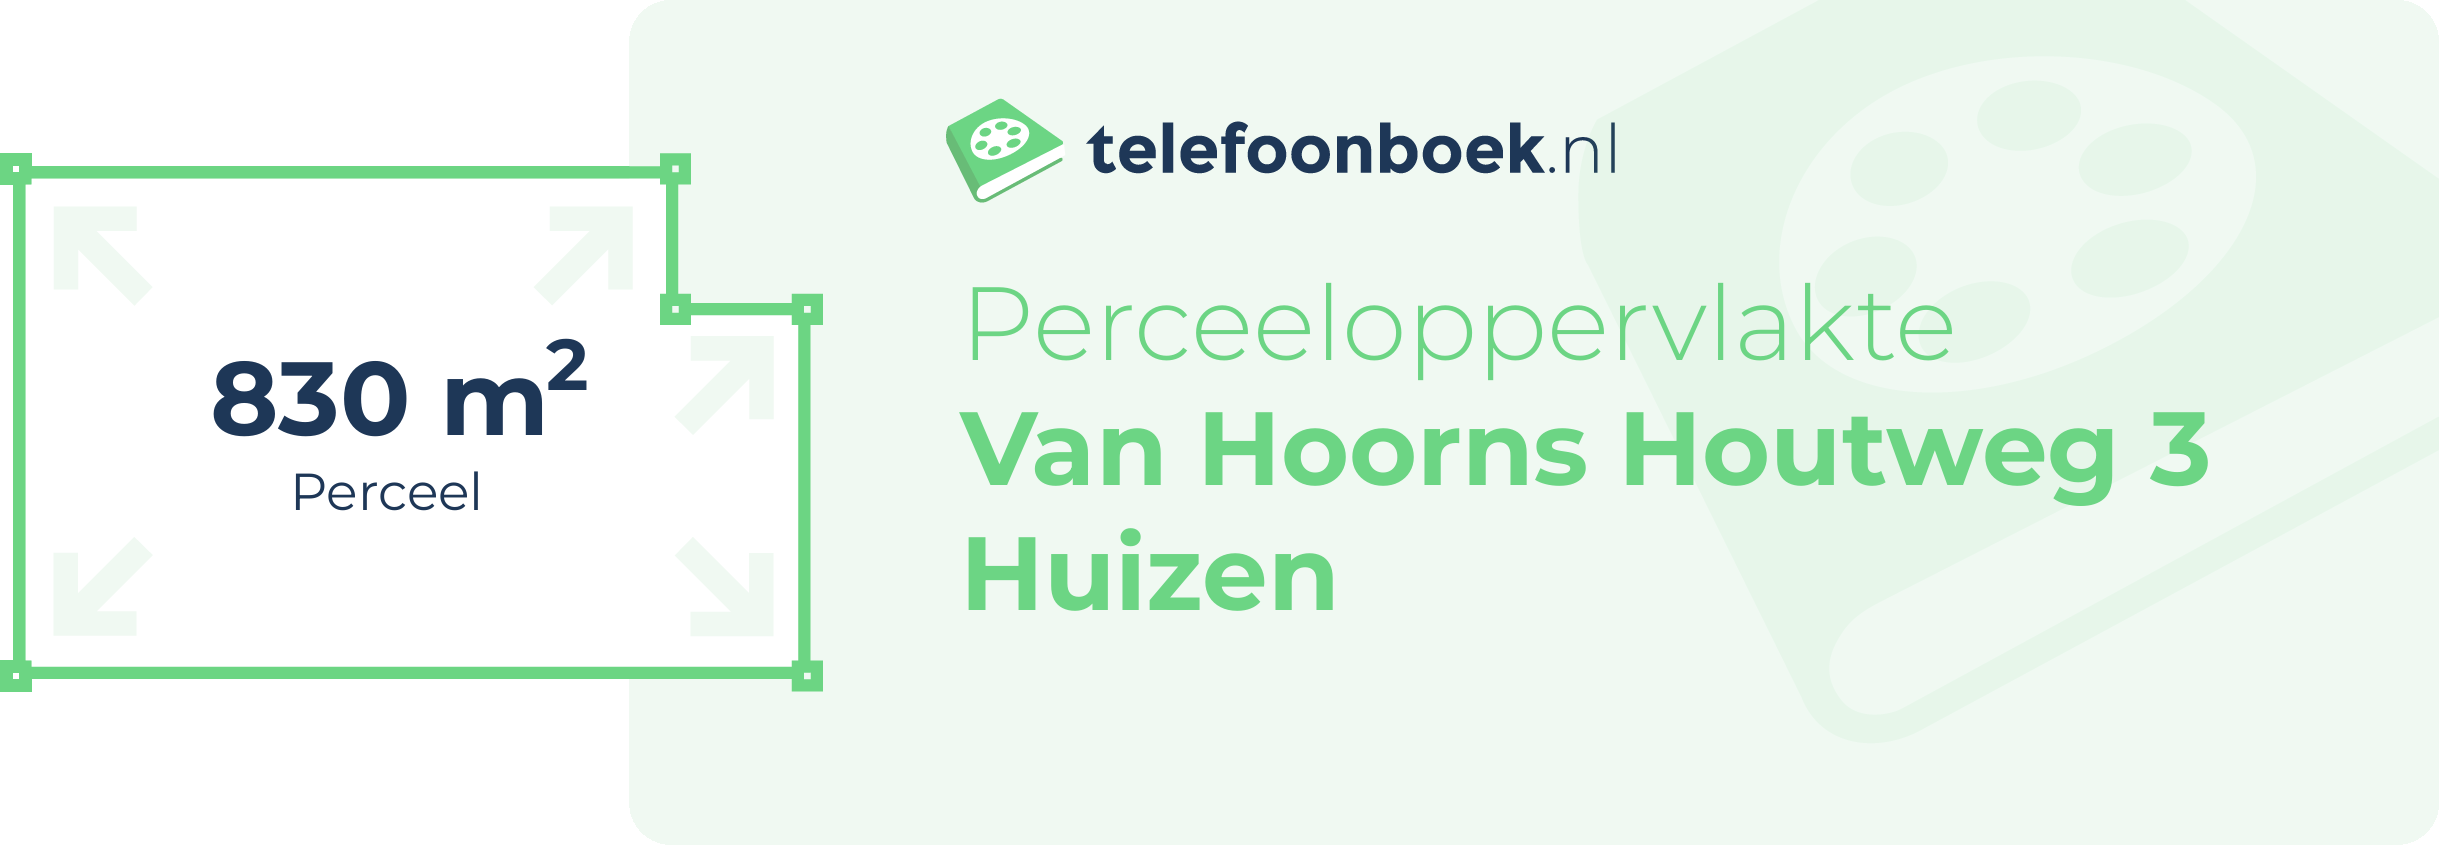 Perceeloppervlakte Van Hoorns Houtweg 3 Huizen